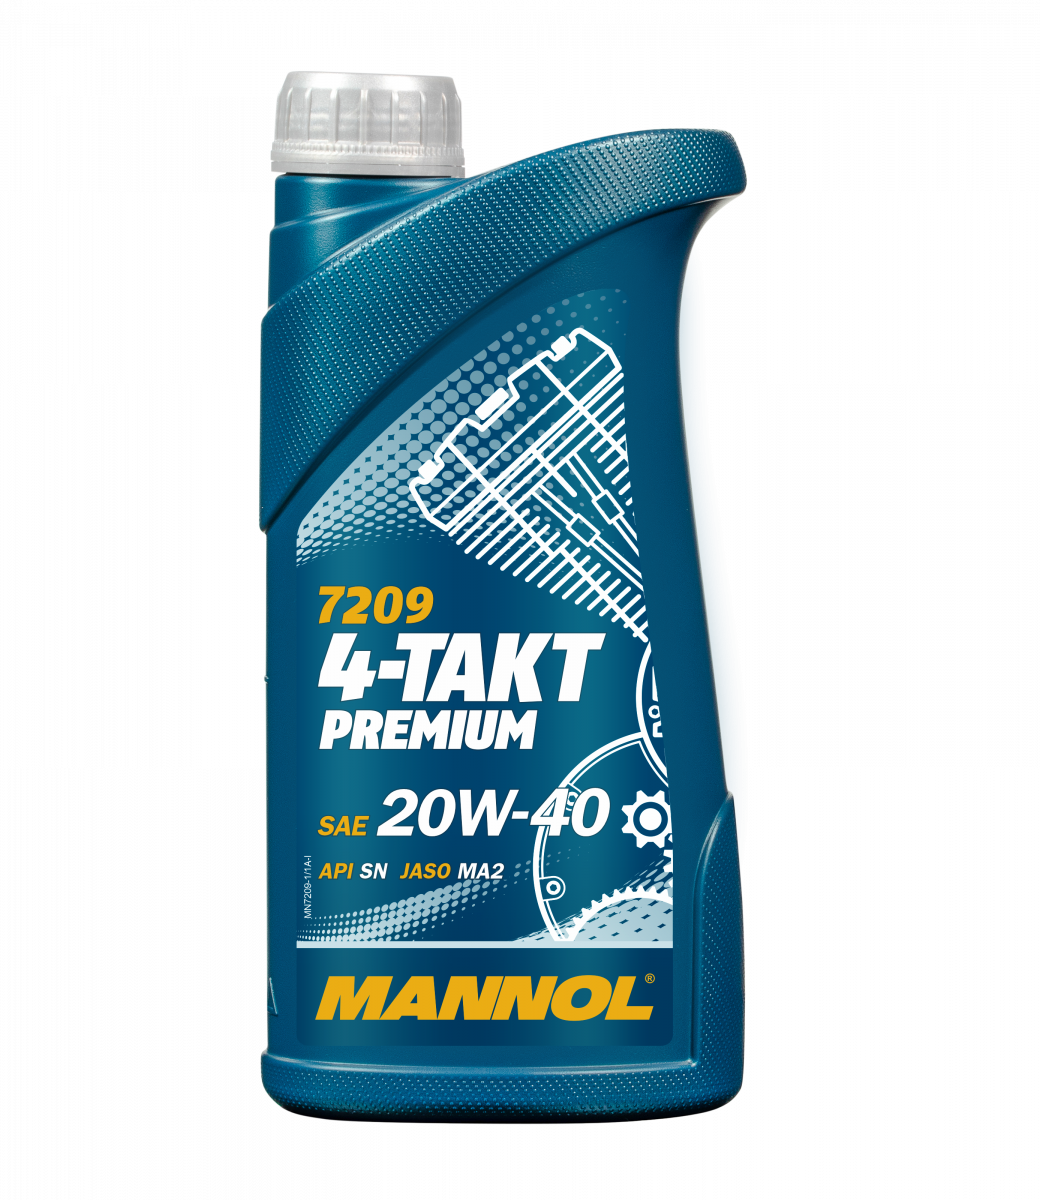 20W-40 Mannol 7209 Premium 4-Takt Motoröl Motorrad 1 Liter